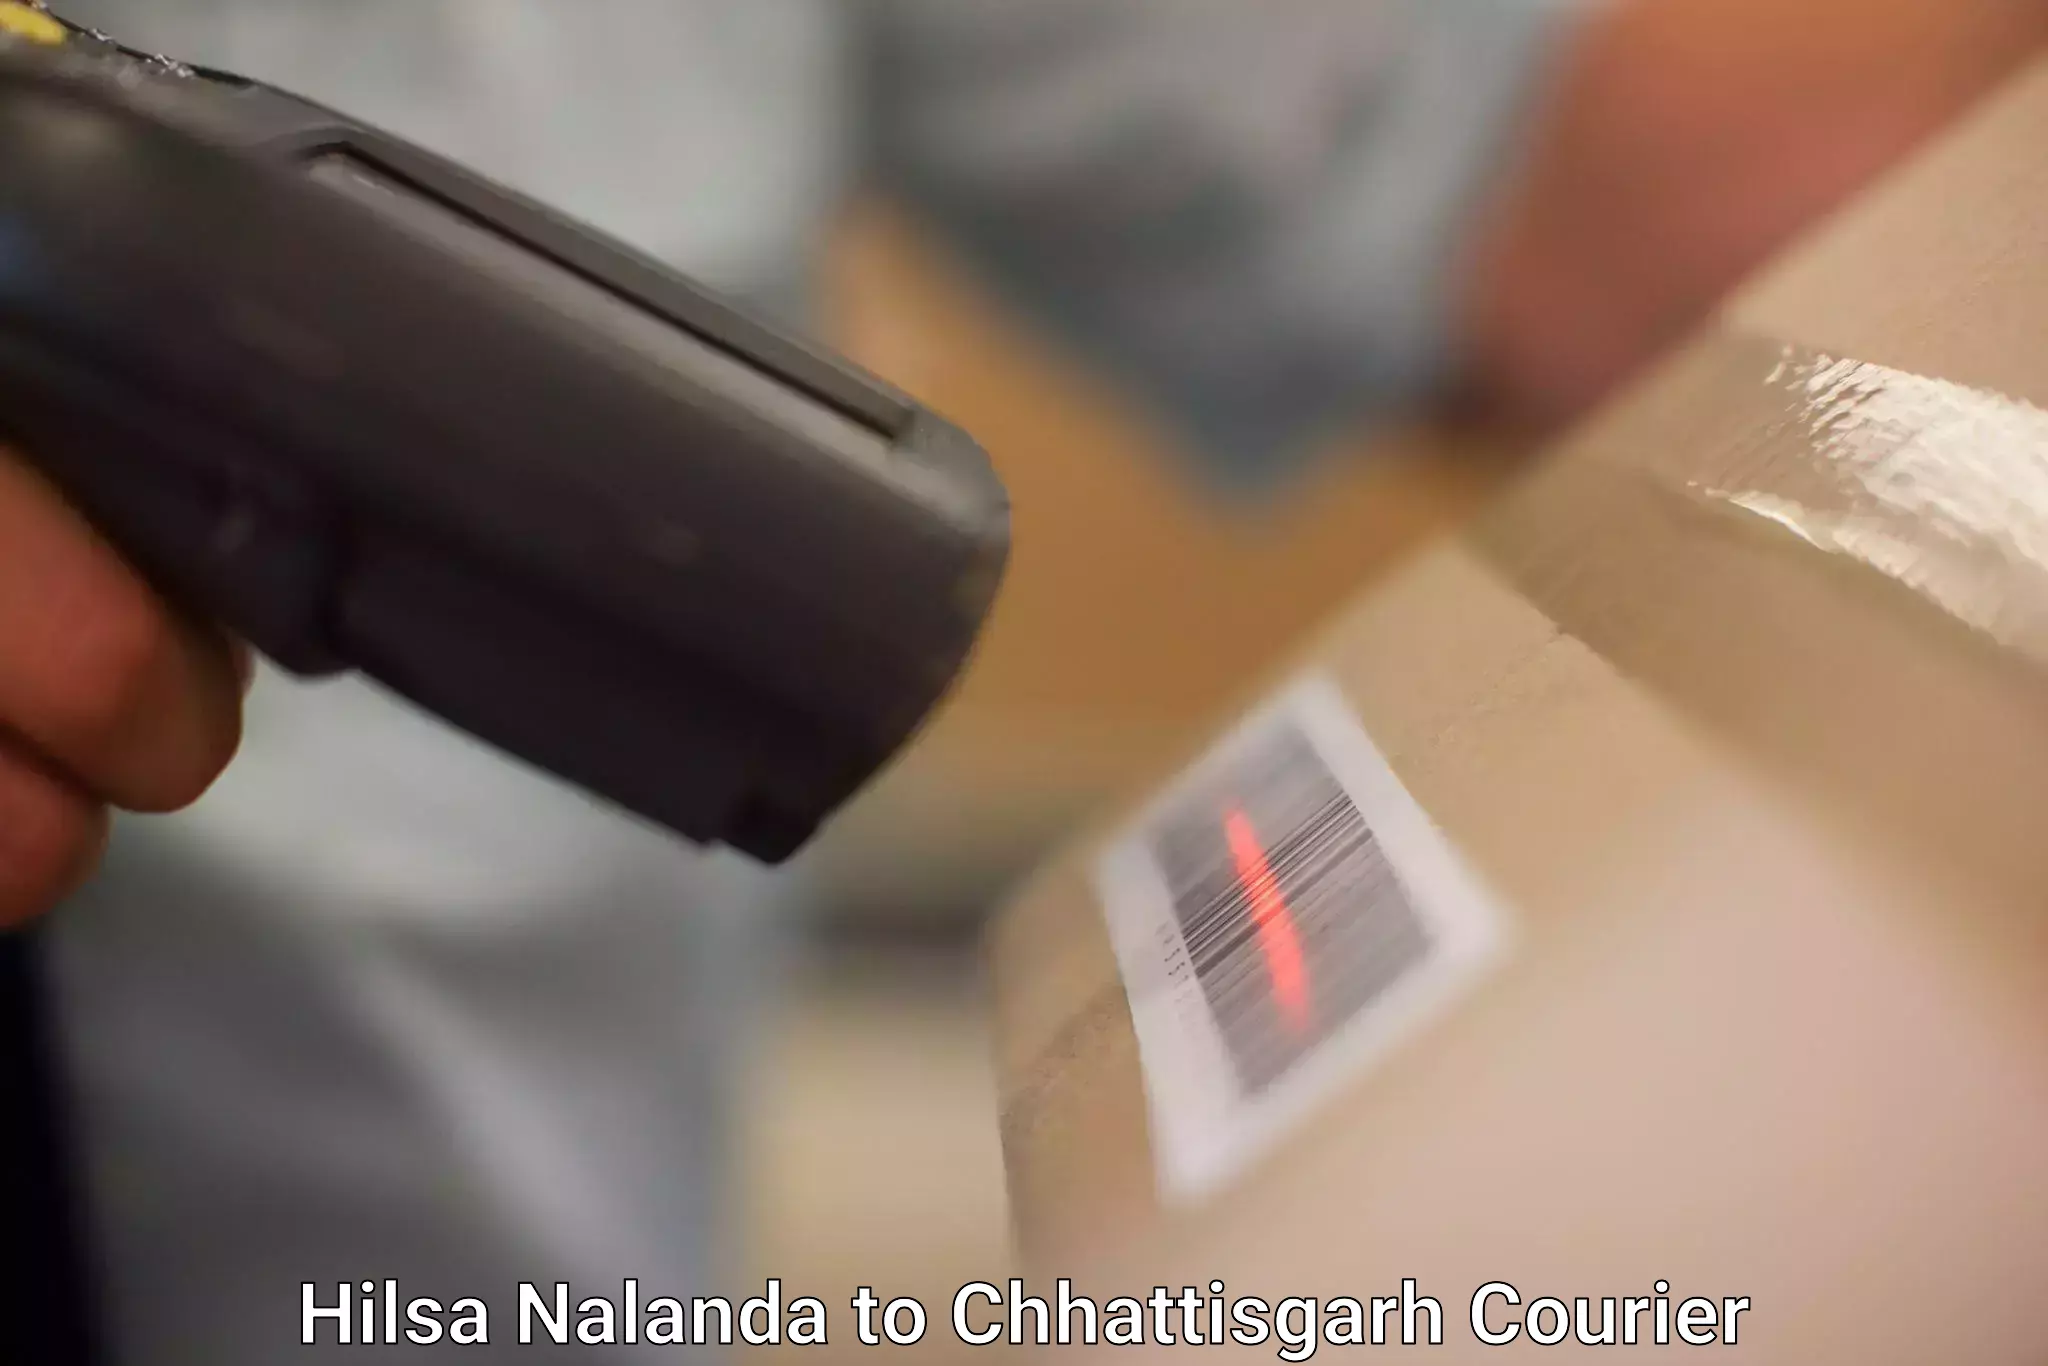 User-friendly delivery service Hilsa Nalanda to Chhattisgarh